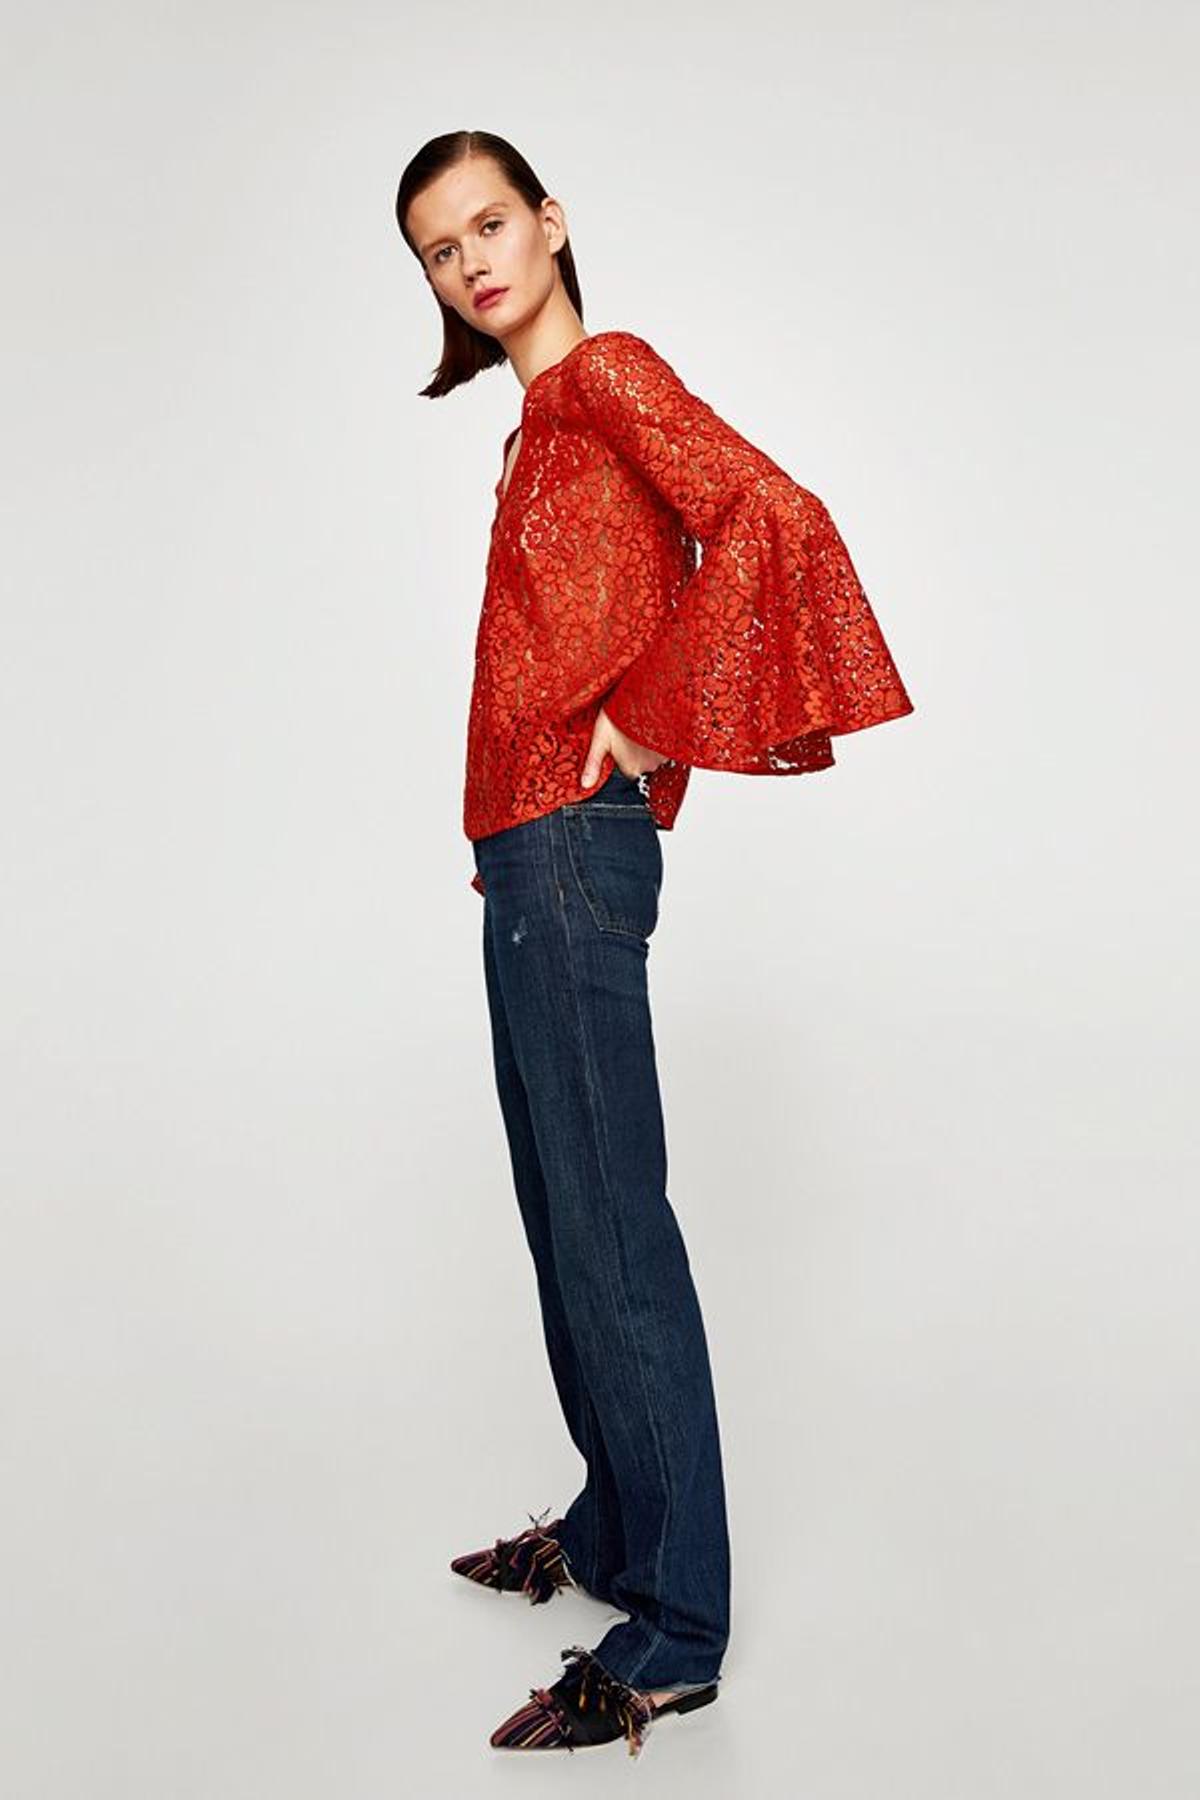 Rebajas en Zara: blusa de encaje naranja